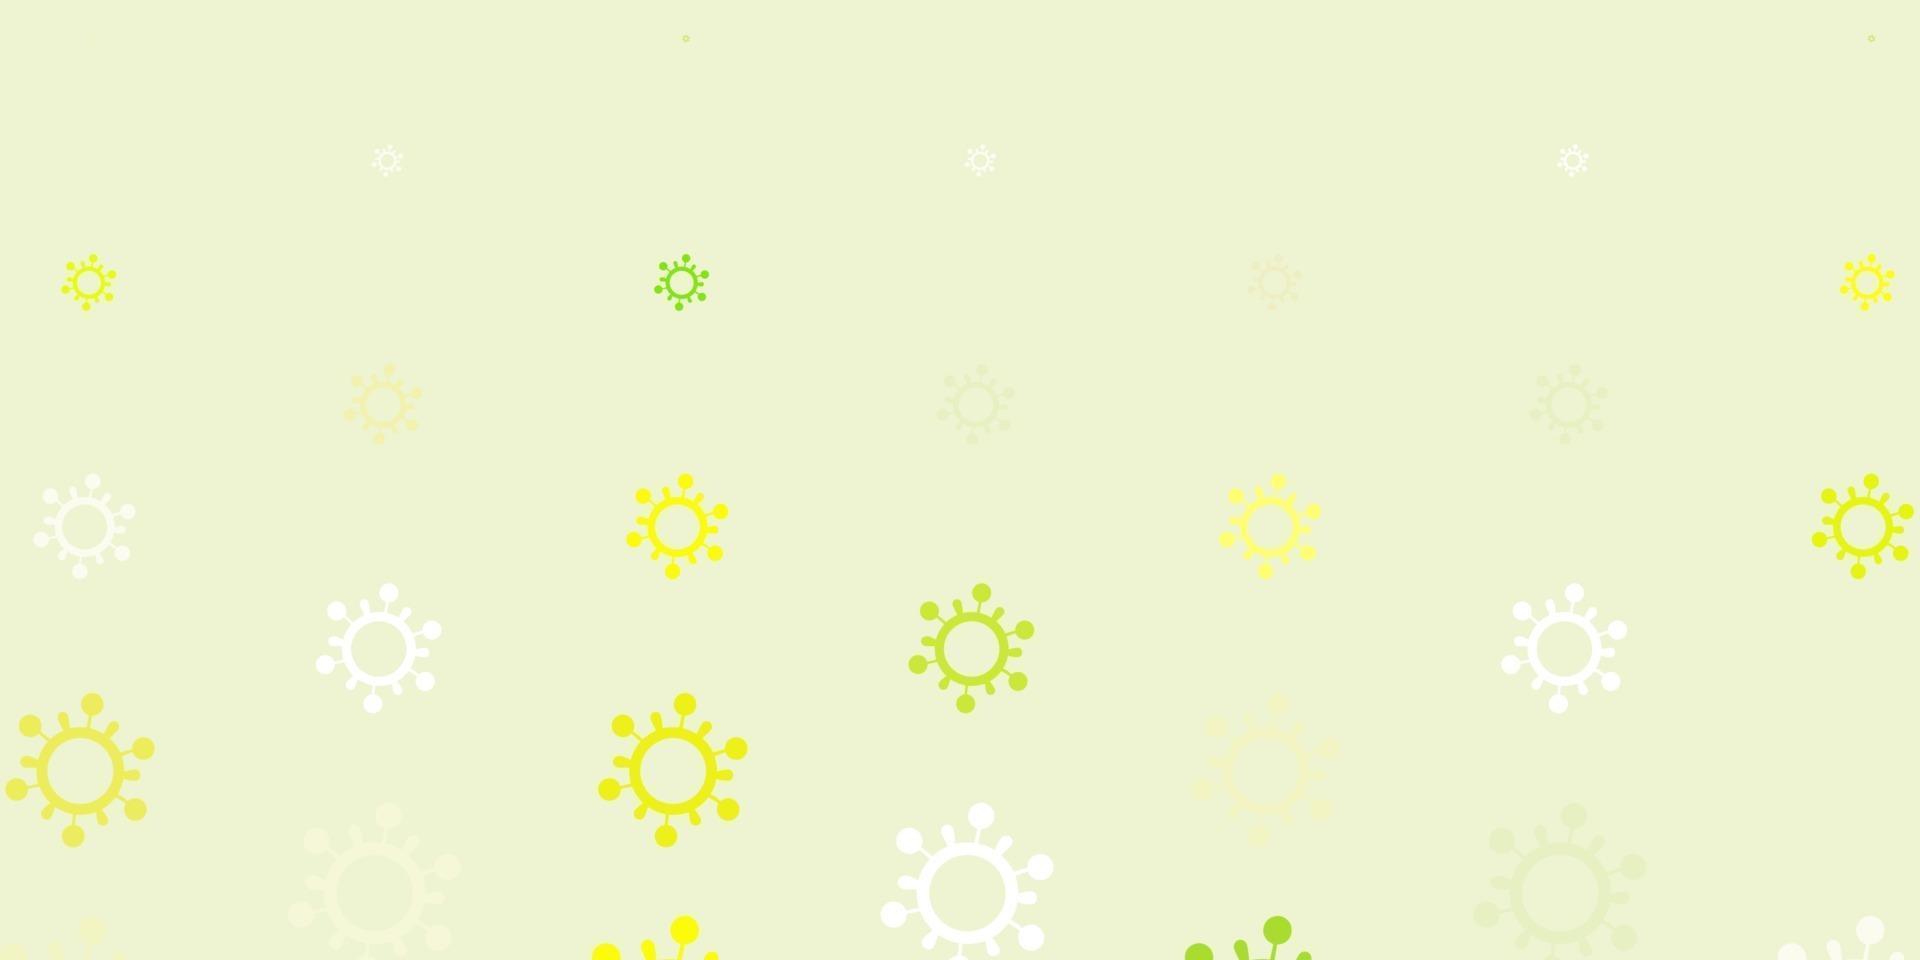 sfondo vettoriale verde chiaro, giallo con simboli covid-19.